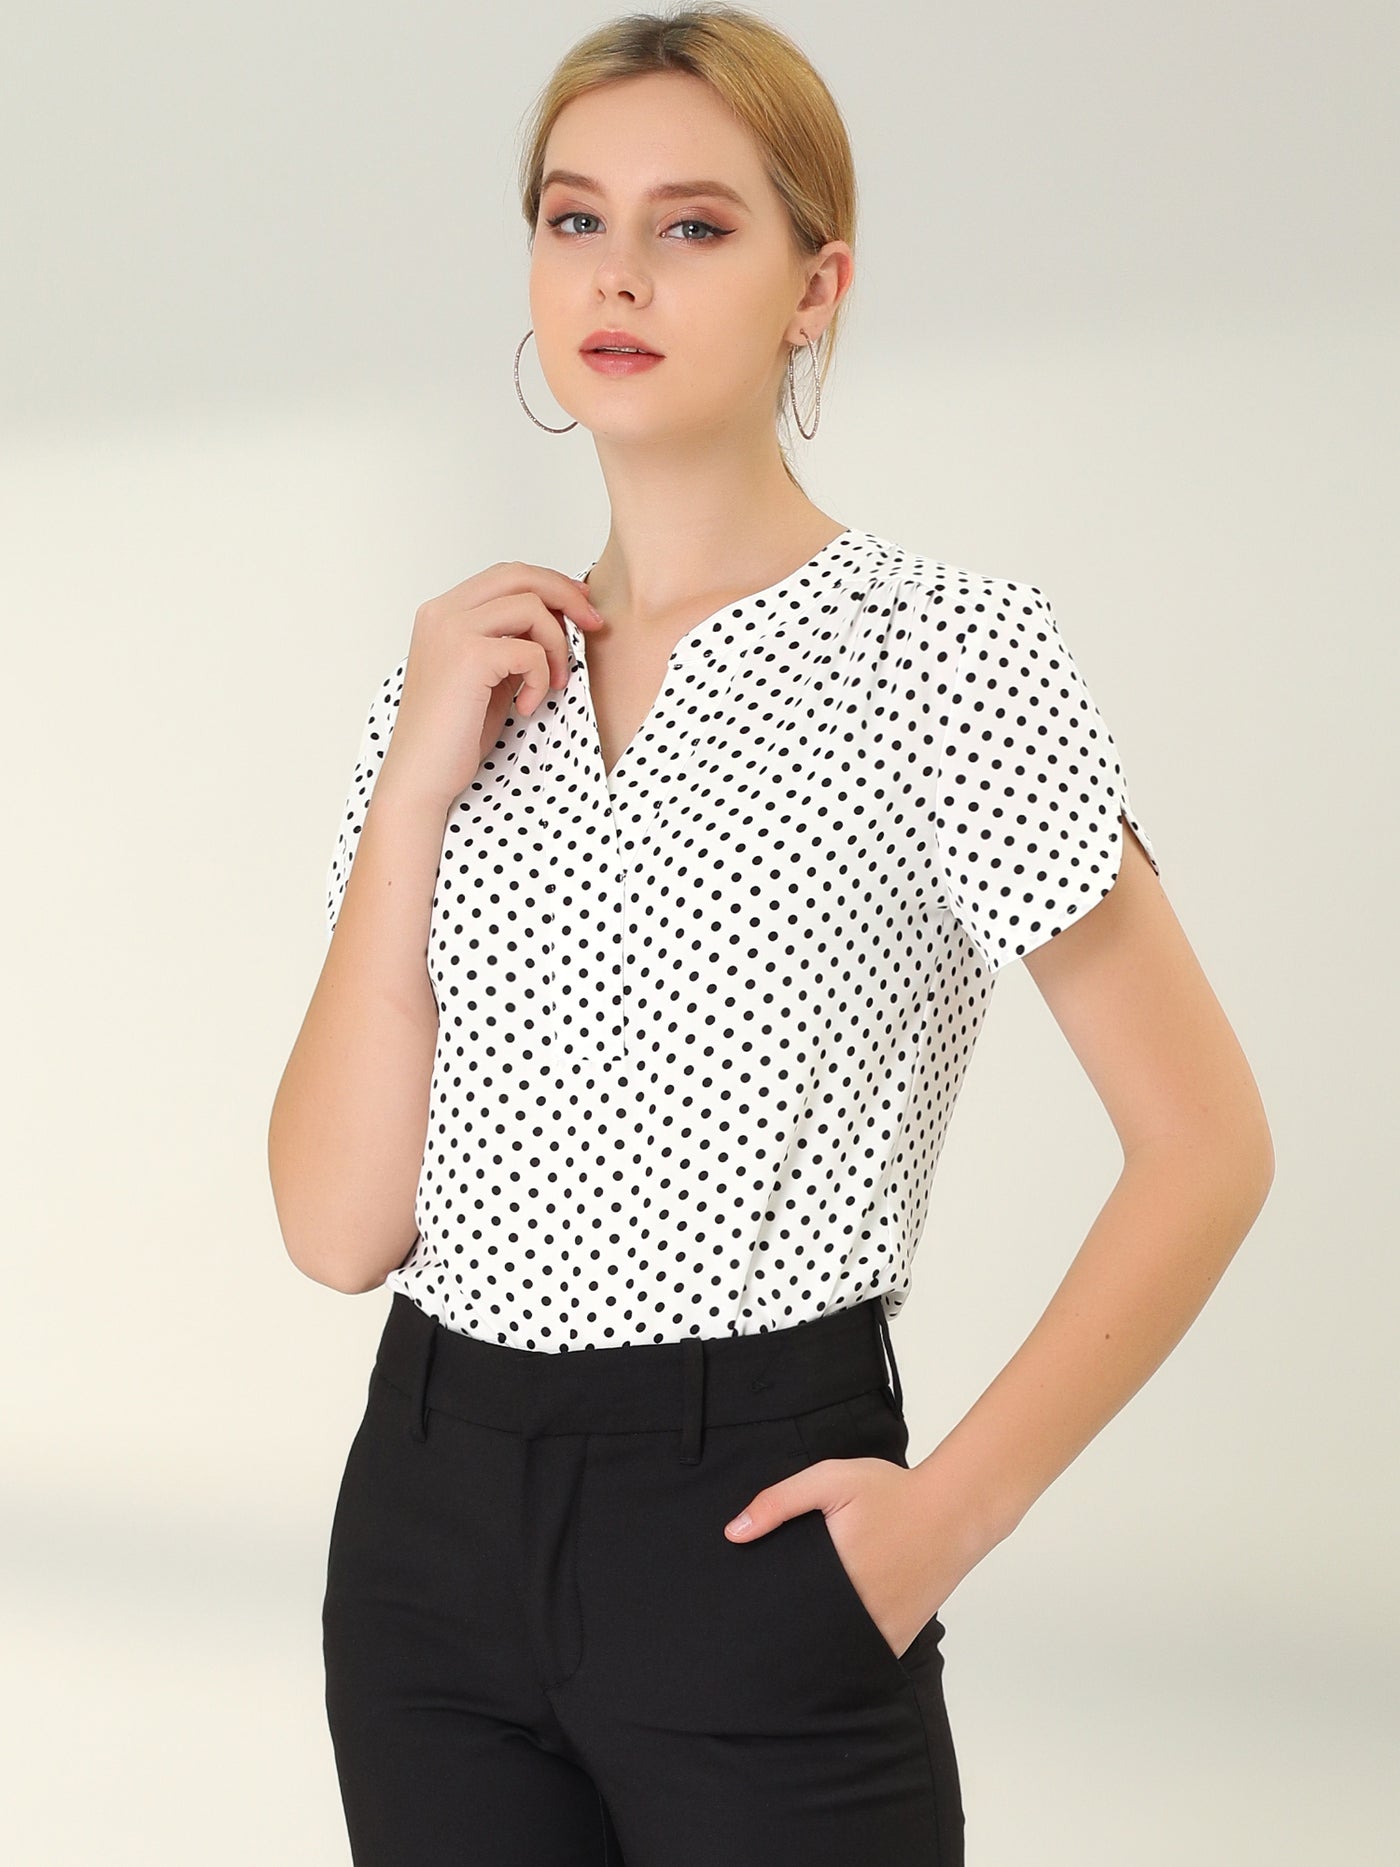 Allegra K Polka Dots Print V Neck Short Sleeve Elegant Work Office Tops